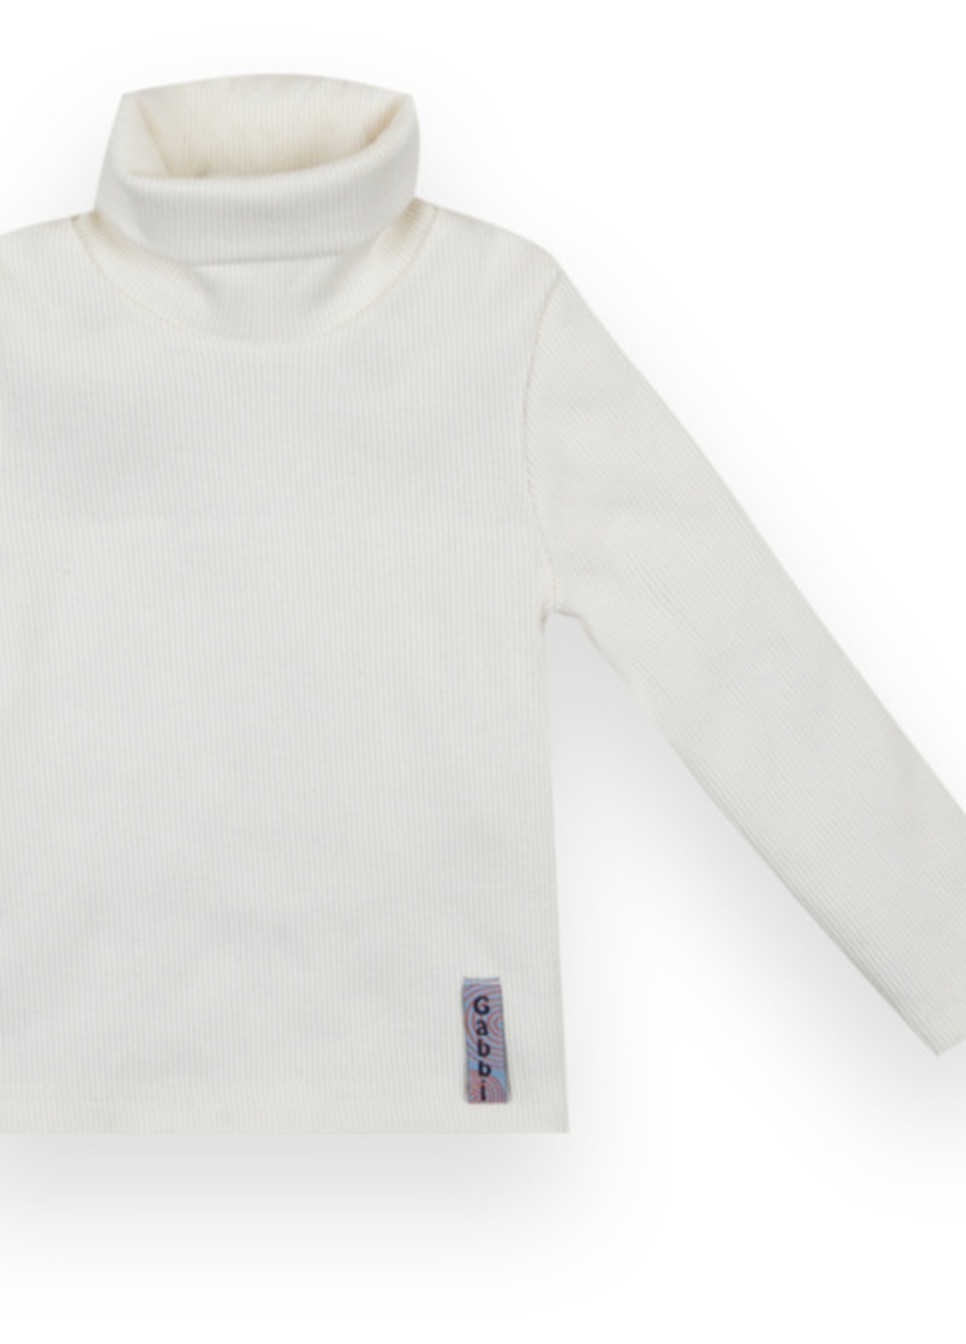 Молочный демисезонный детский свитер sv-21-10-1 *стиль* Габби